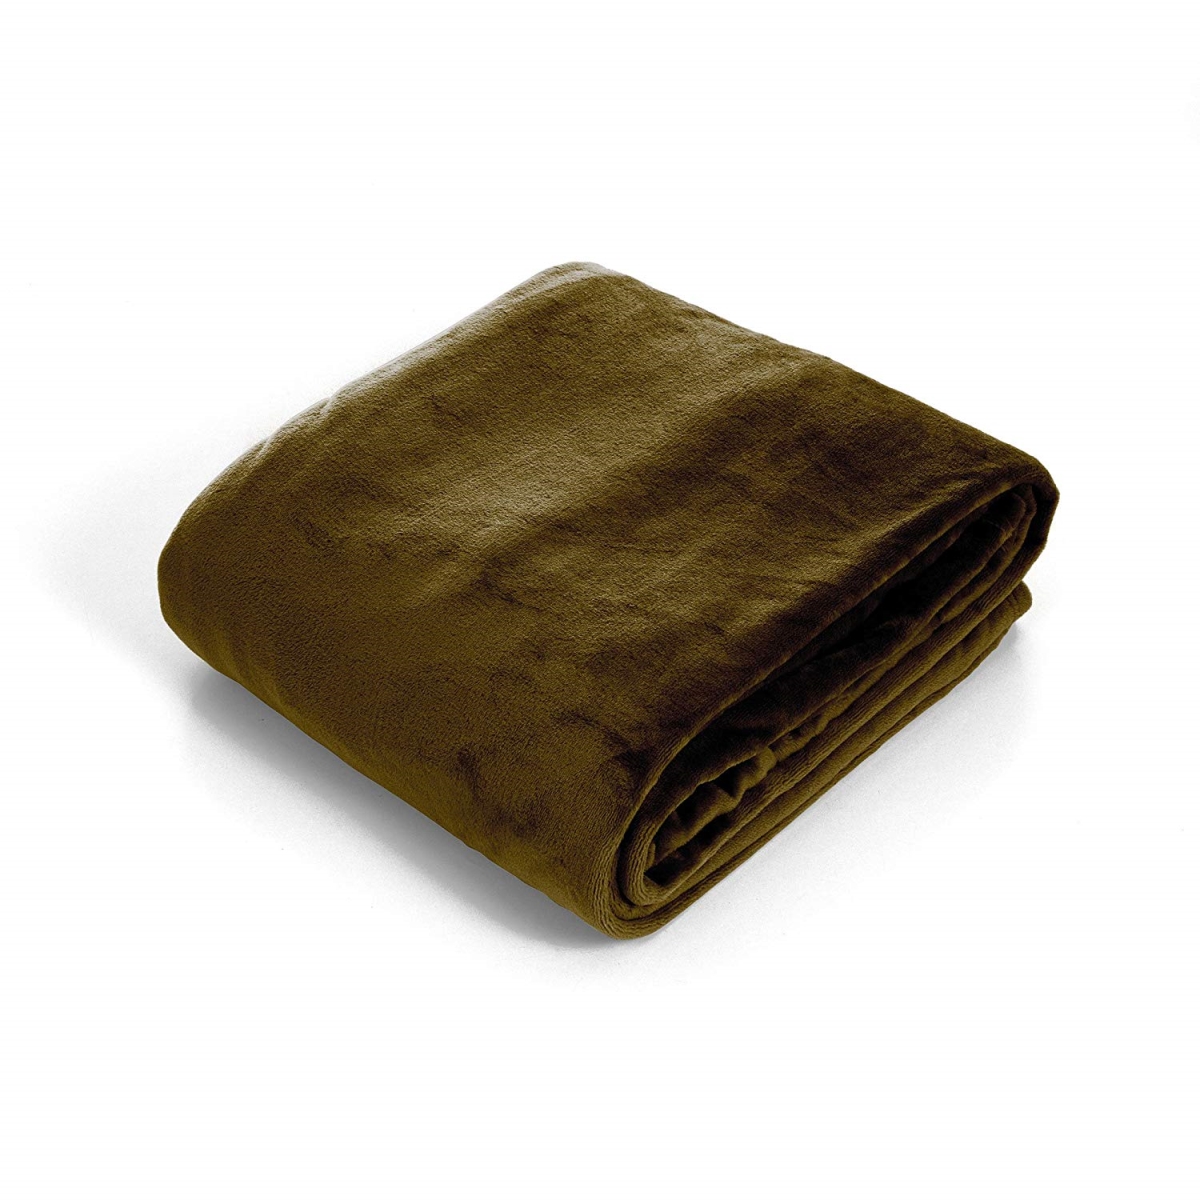 61a-06288 Super Soft Flannel Blanket, King Size - Olive